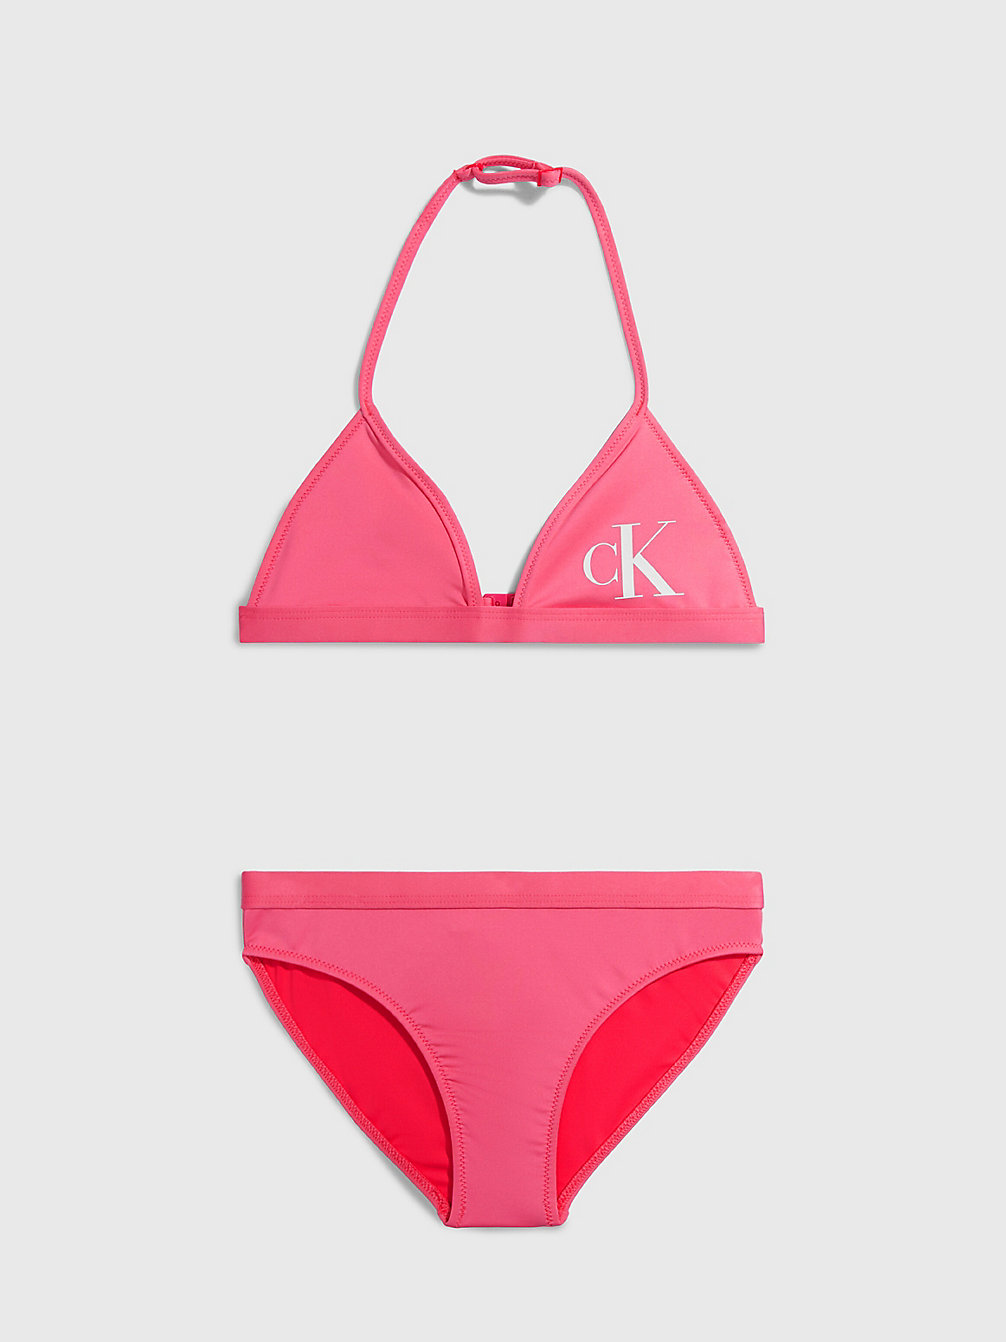 PINK FLASH Bikini-Set Mit Triangel-Top Für Mädchen - CK Monogram undefined Maedchen Calvin Klein